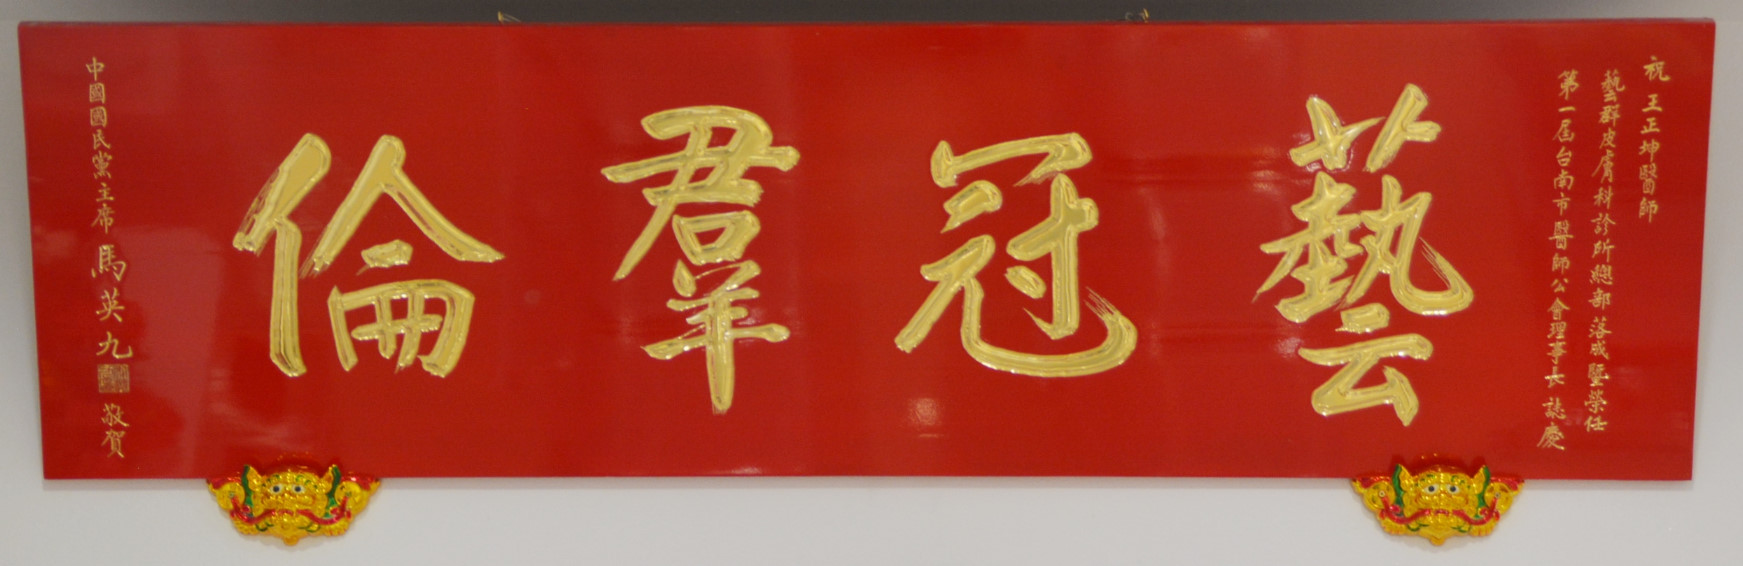 馬英九總統親自撰寫書法題字贈匾「藝冠群倫」-藝群皮膚科診所王正坤醫師